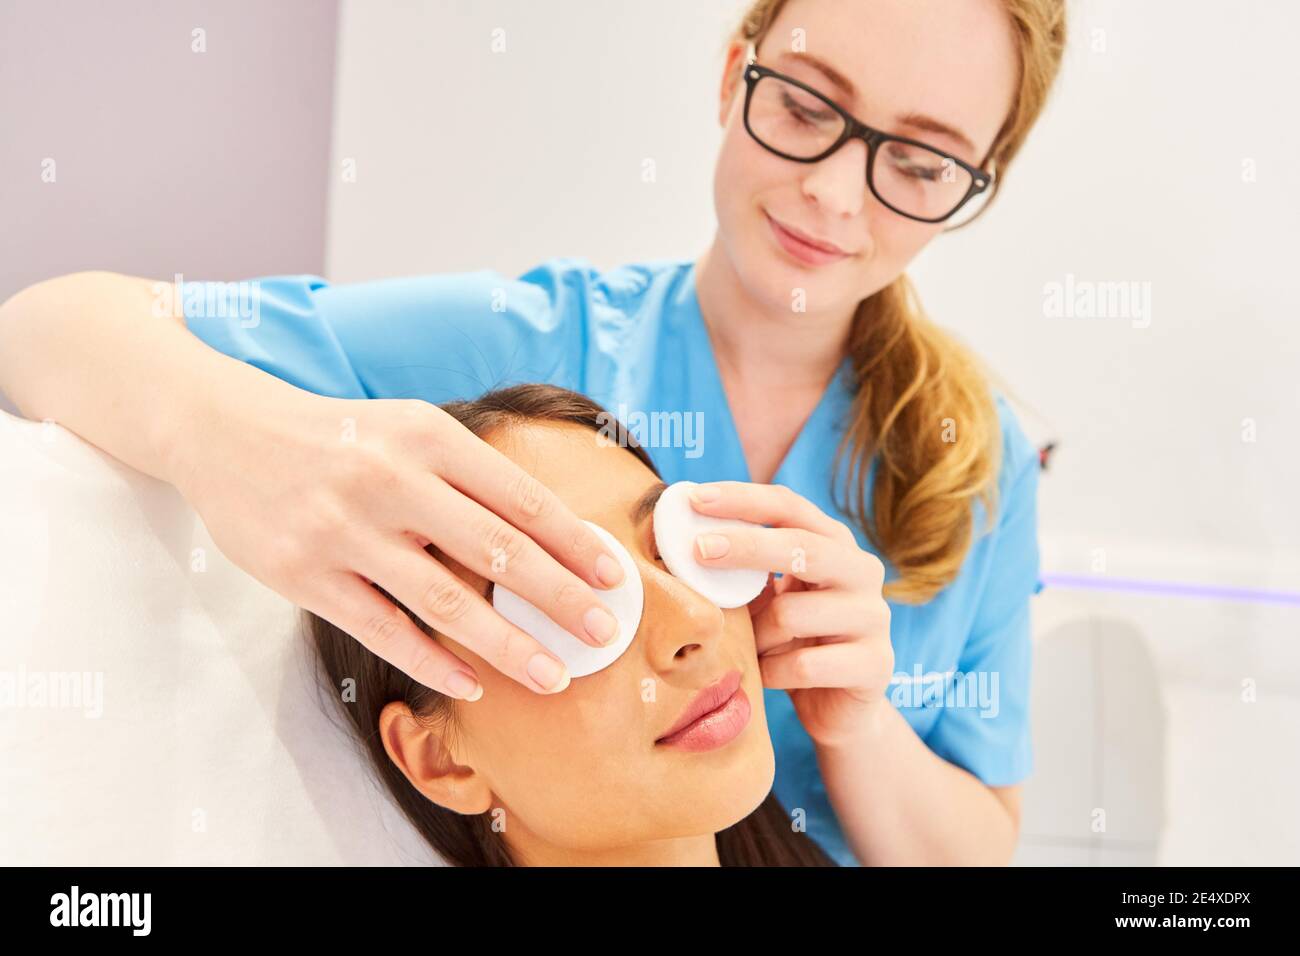 Kosmetikerin professionell Reinigung der Haut mit Wattepads auf einem Frauengesicht Stockfoto